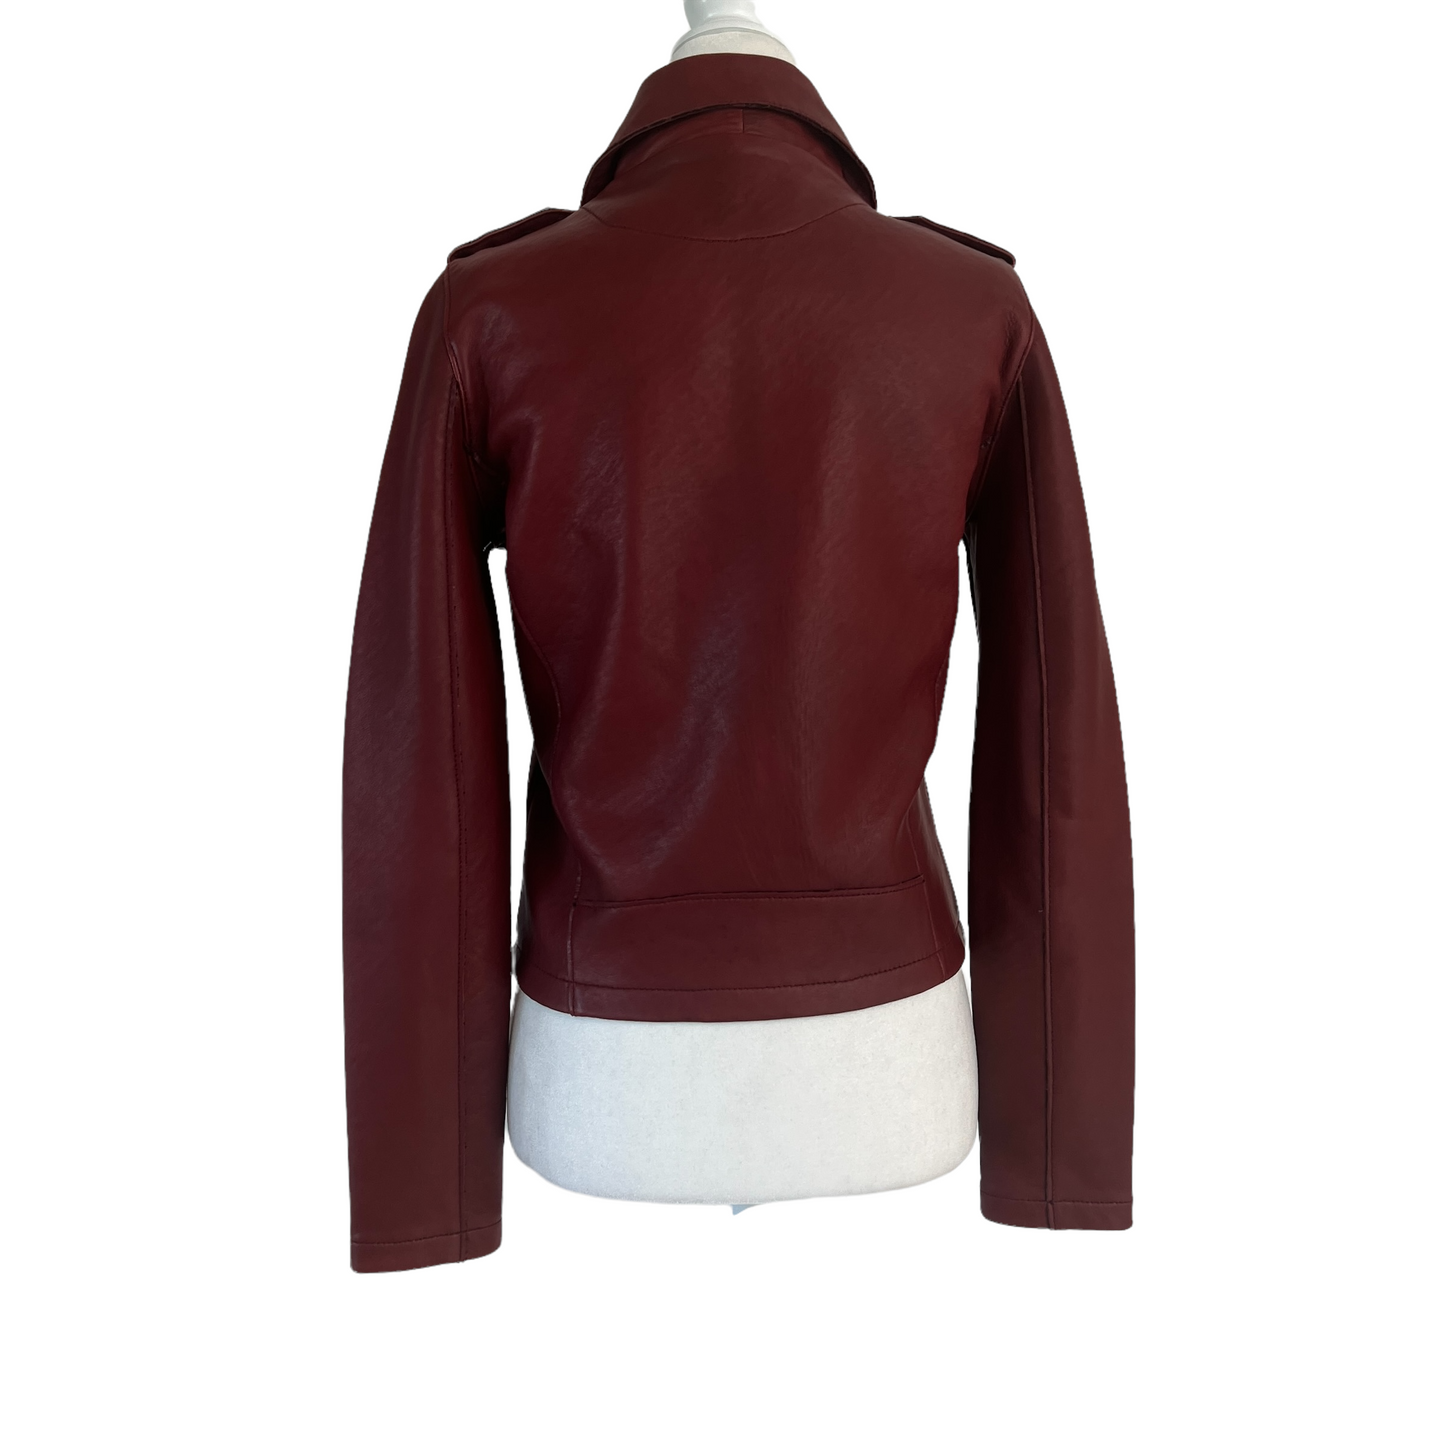 Burgundy Leather Jacket - M